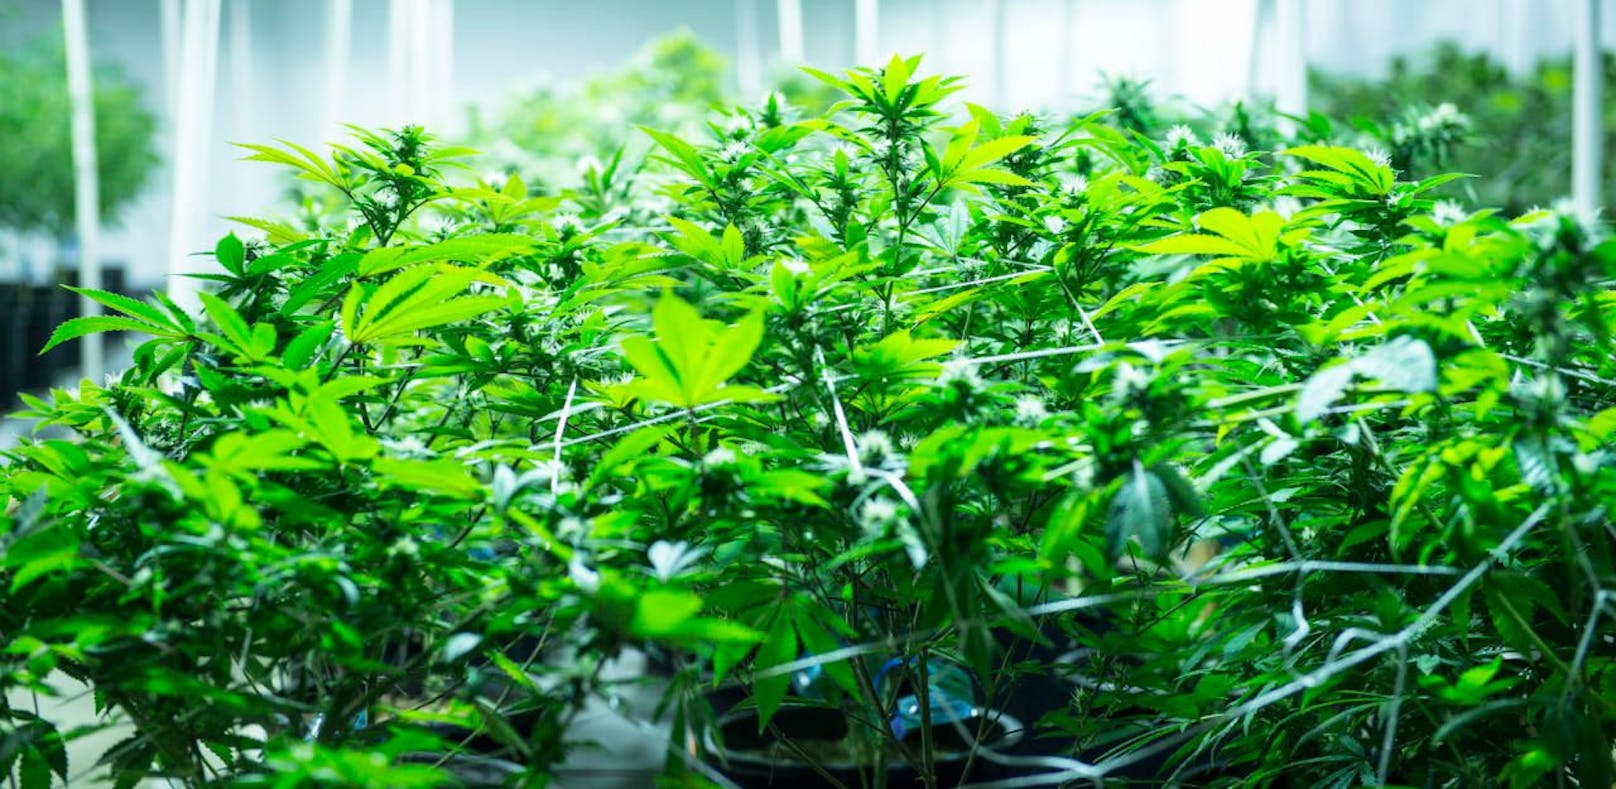 Riesige Cannabis-Plantage in Griechenland entdeckt